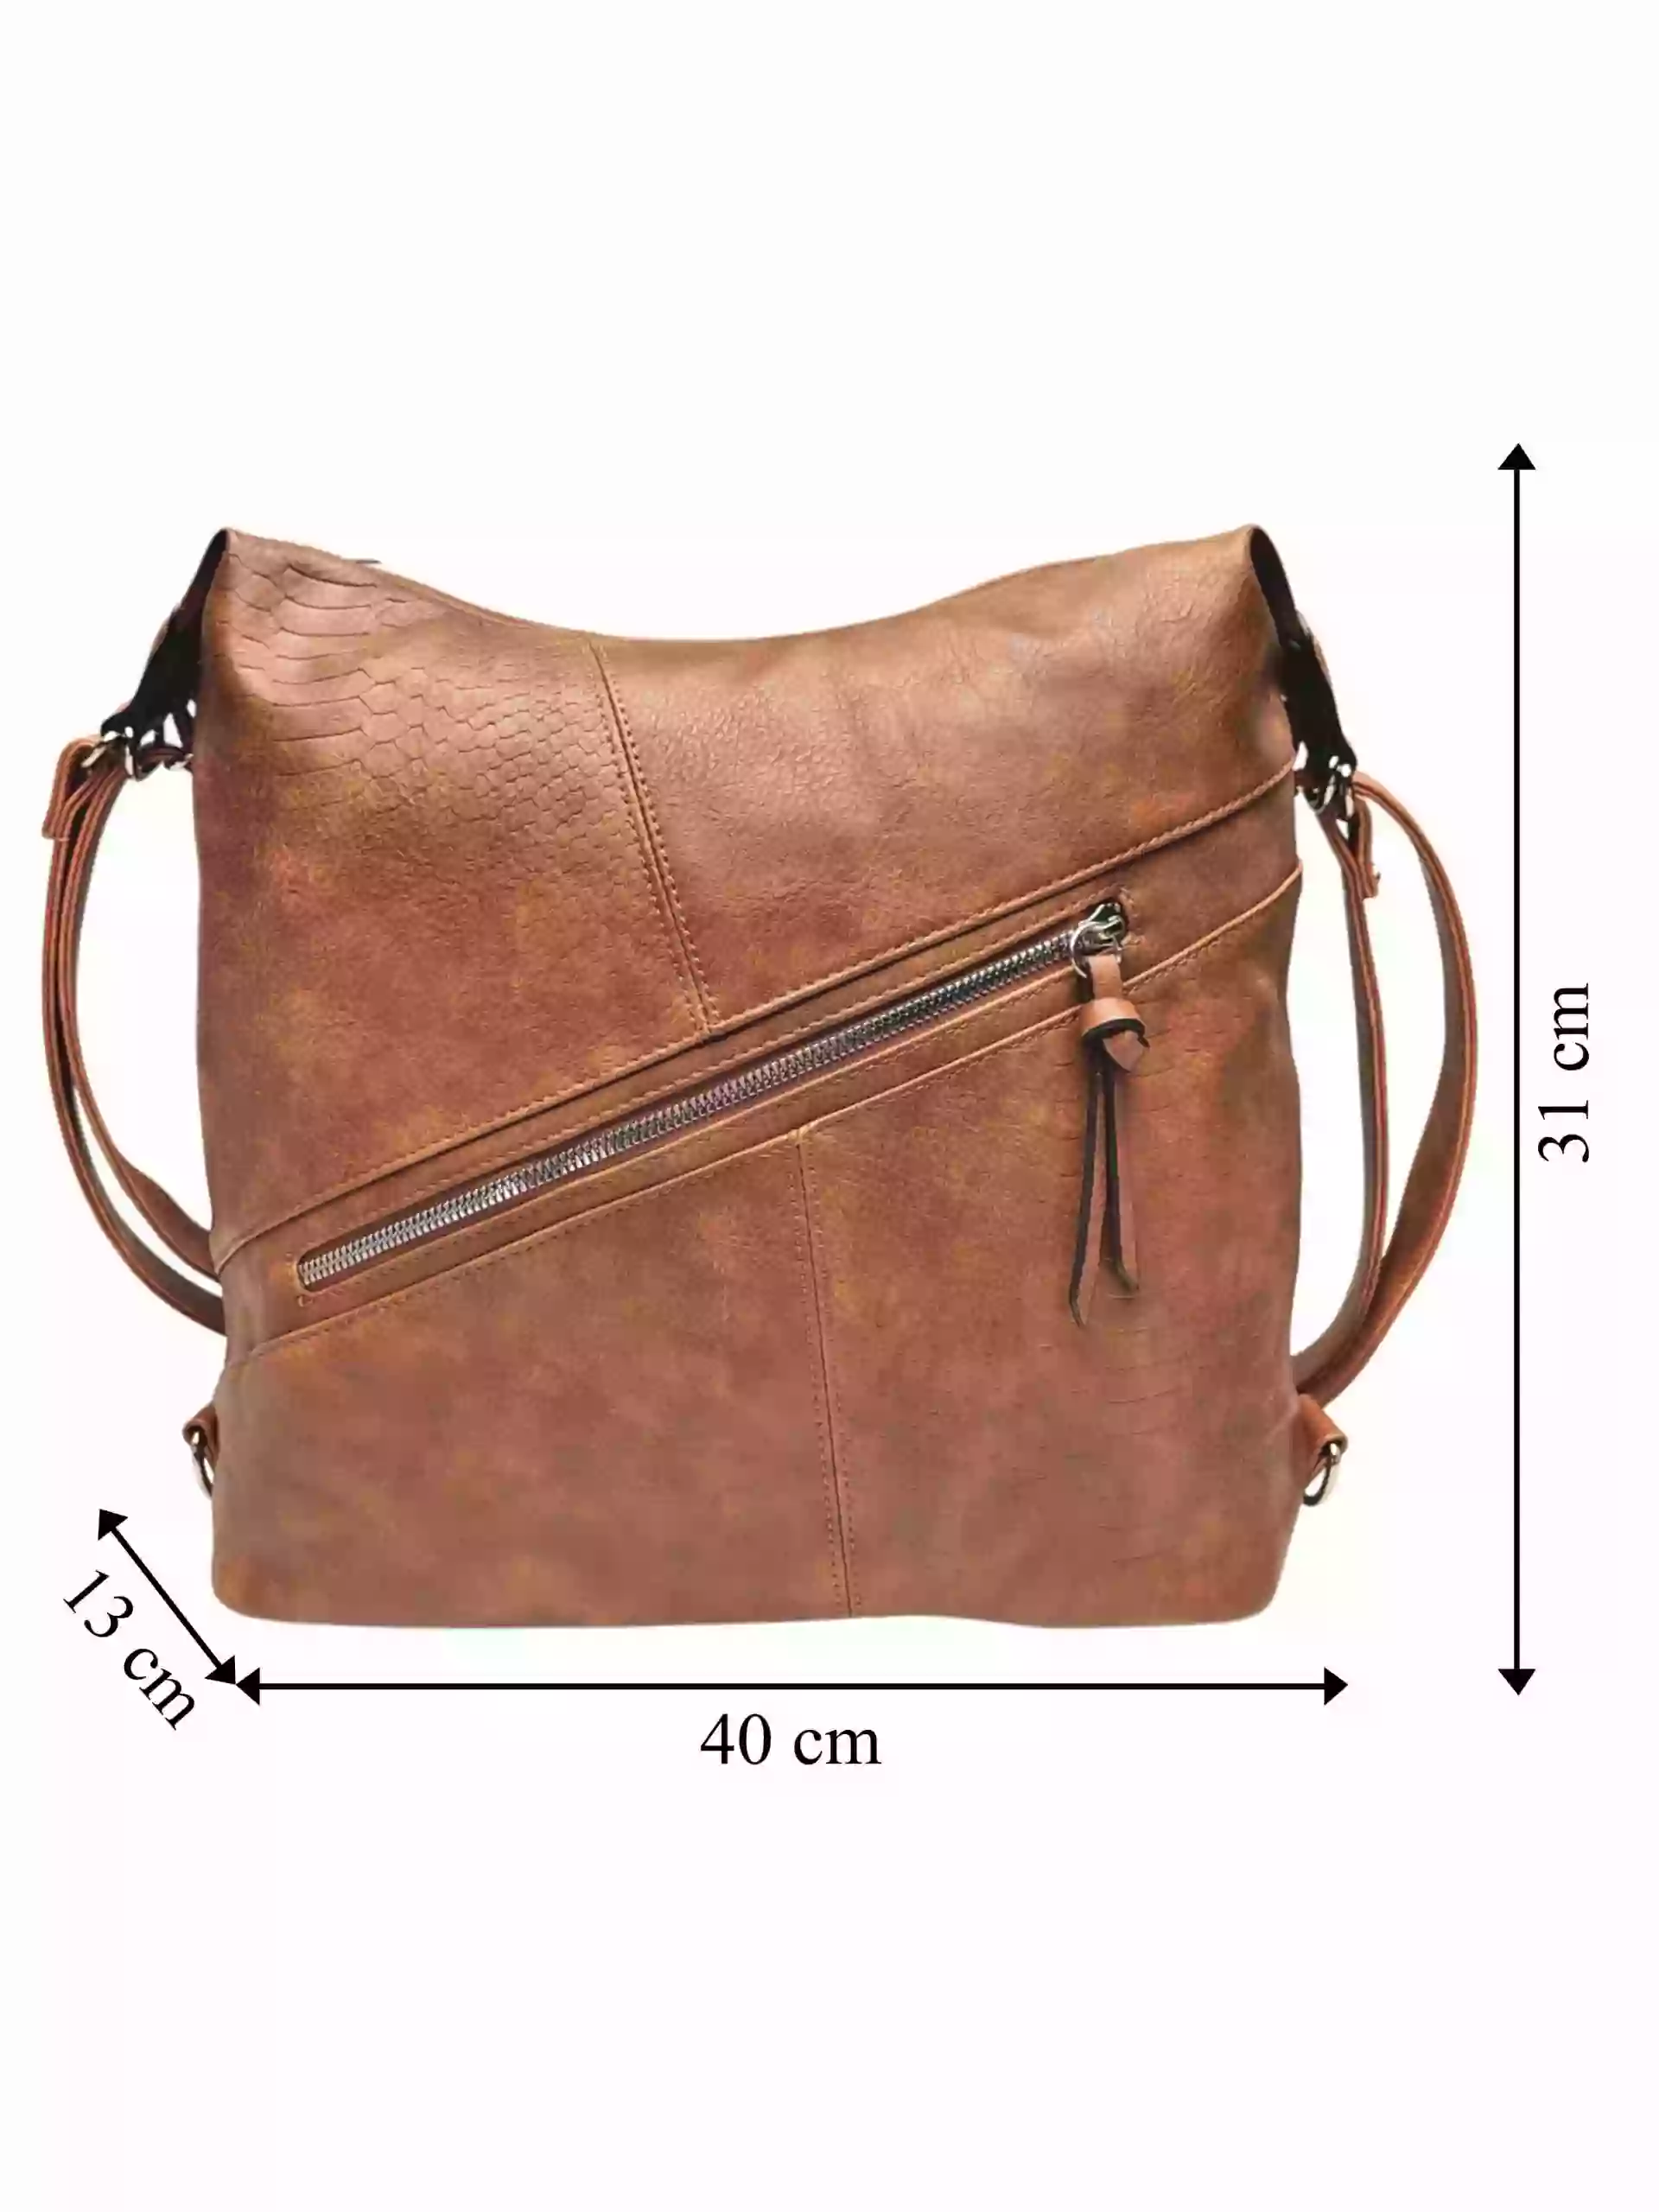 Velký středně hnědý kabelko-batoh z eko kůže, Tapple, H18077, přední strana kabelko-batohu 2v1 s rozměry